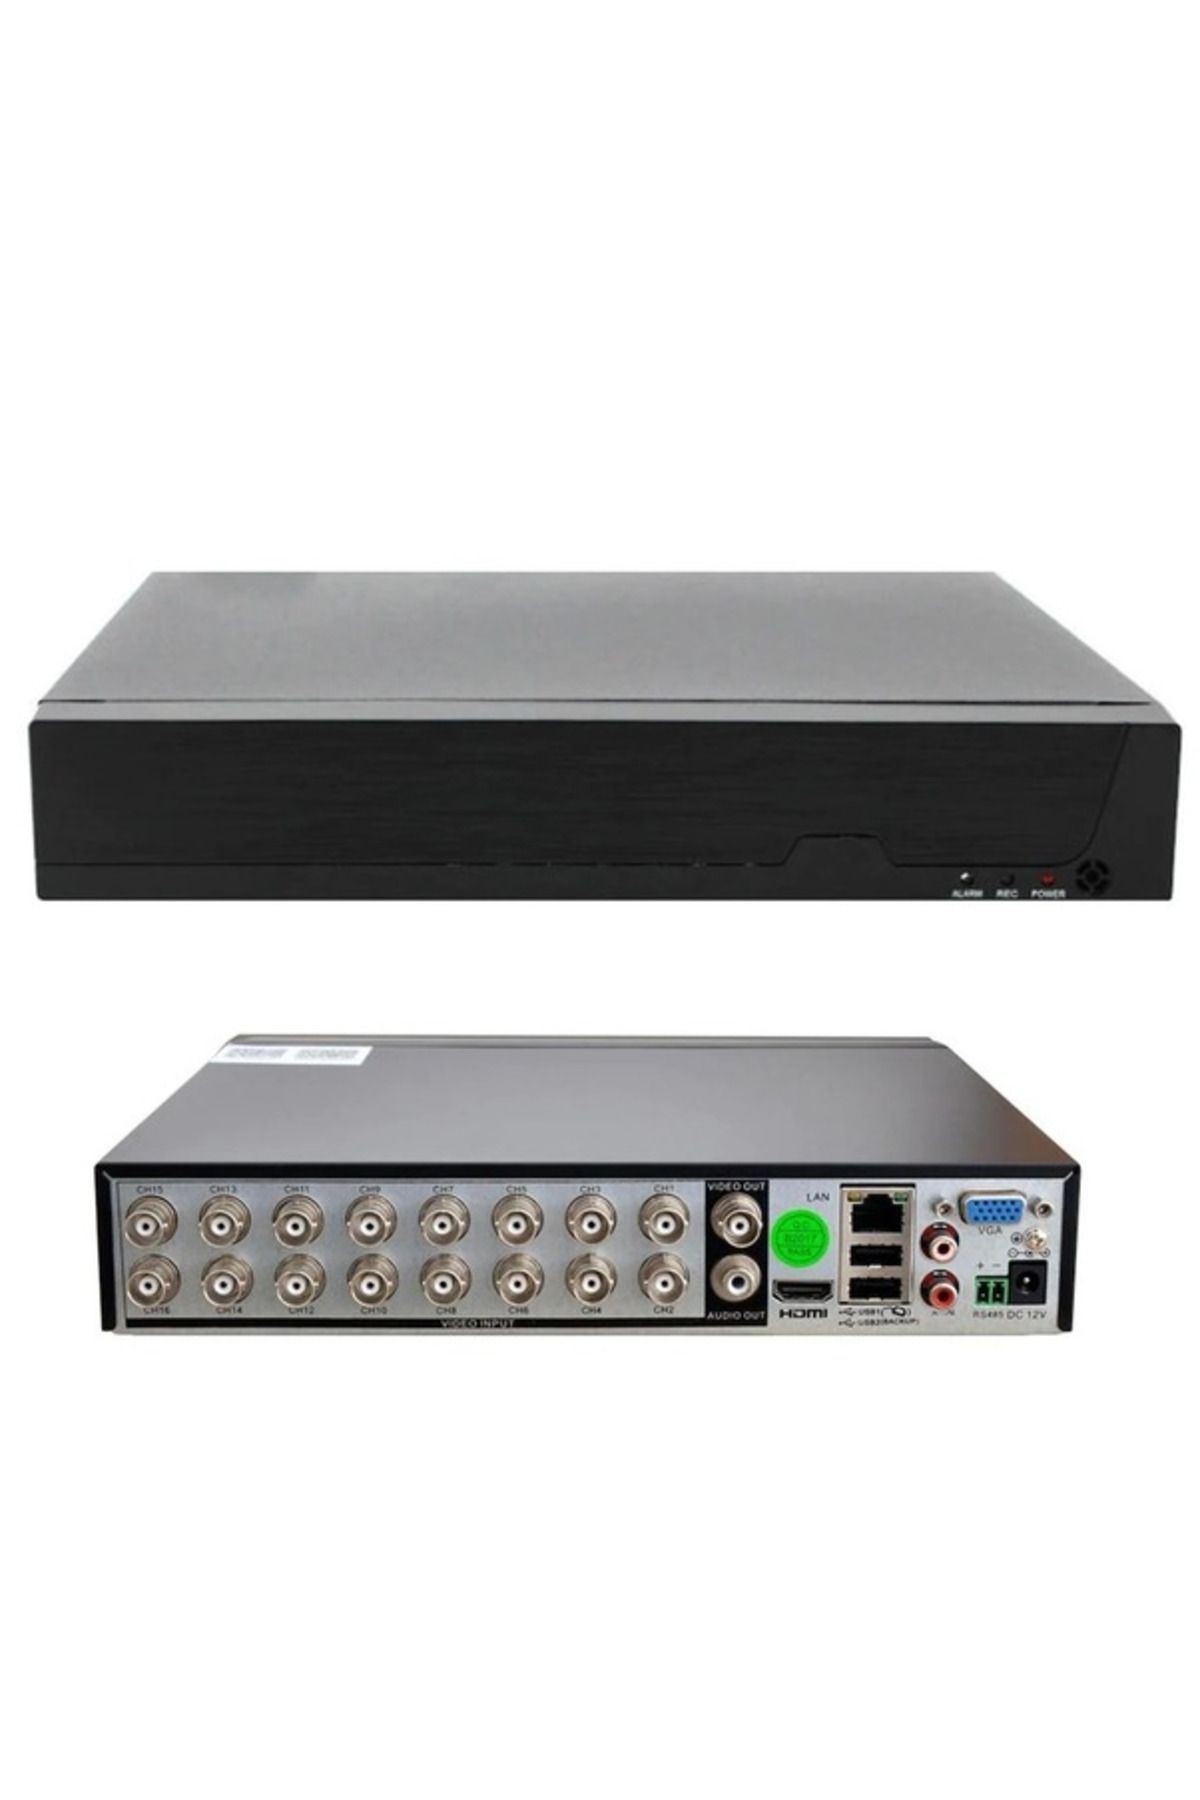 wellbox DVR 16 Kanal Kayıt Cihazı H265 XMEye 2MP Kamera Desteği WB-416N1N2S